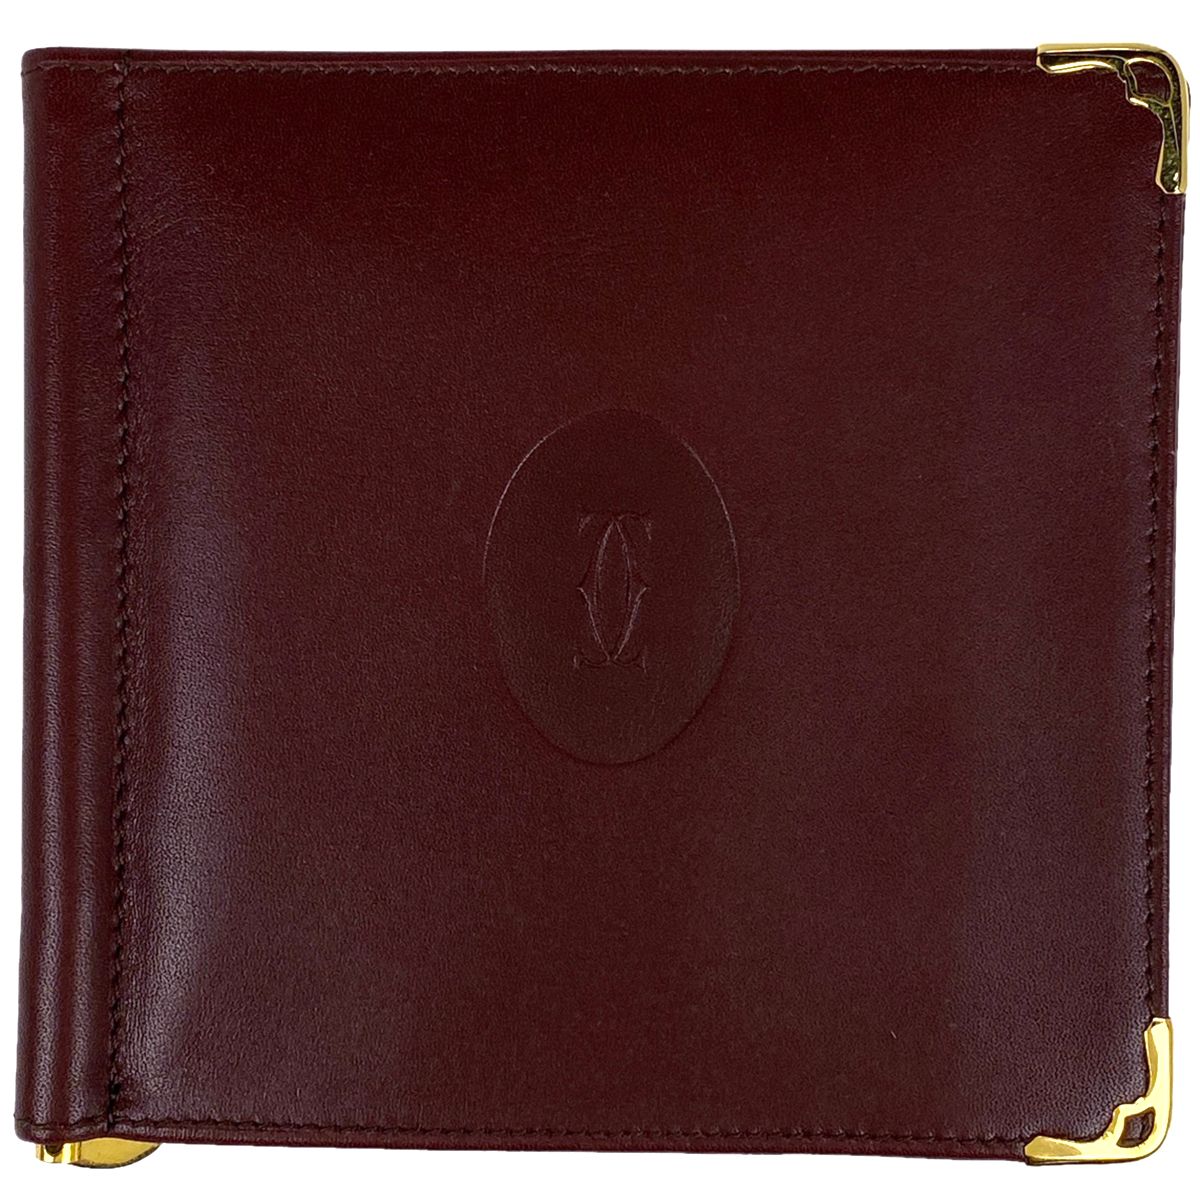 Cartier カルティエ マストライン マネークリップ 二つ折り財布